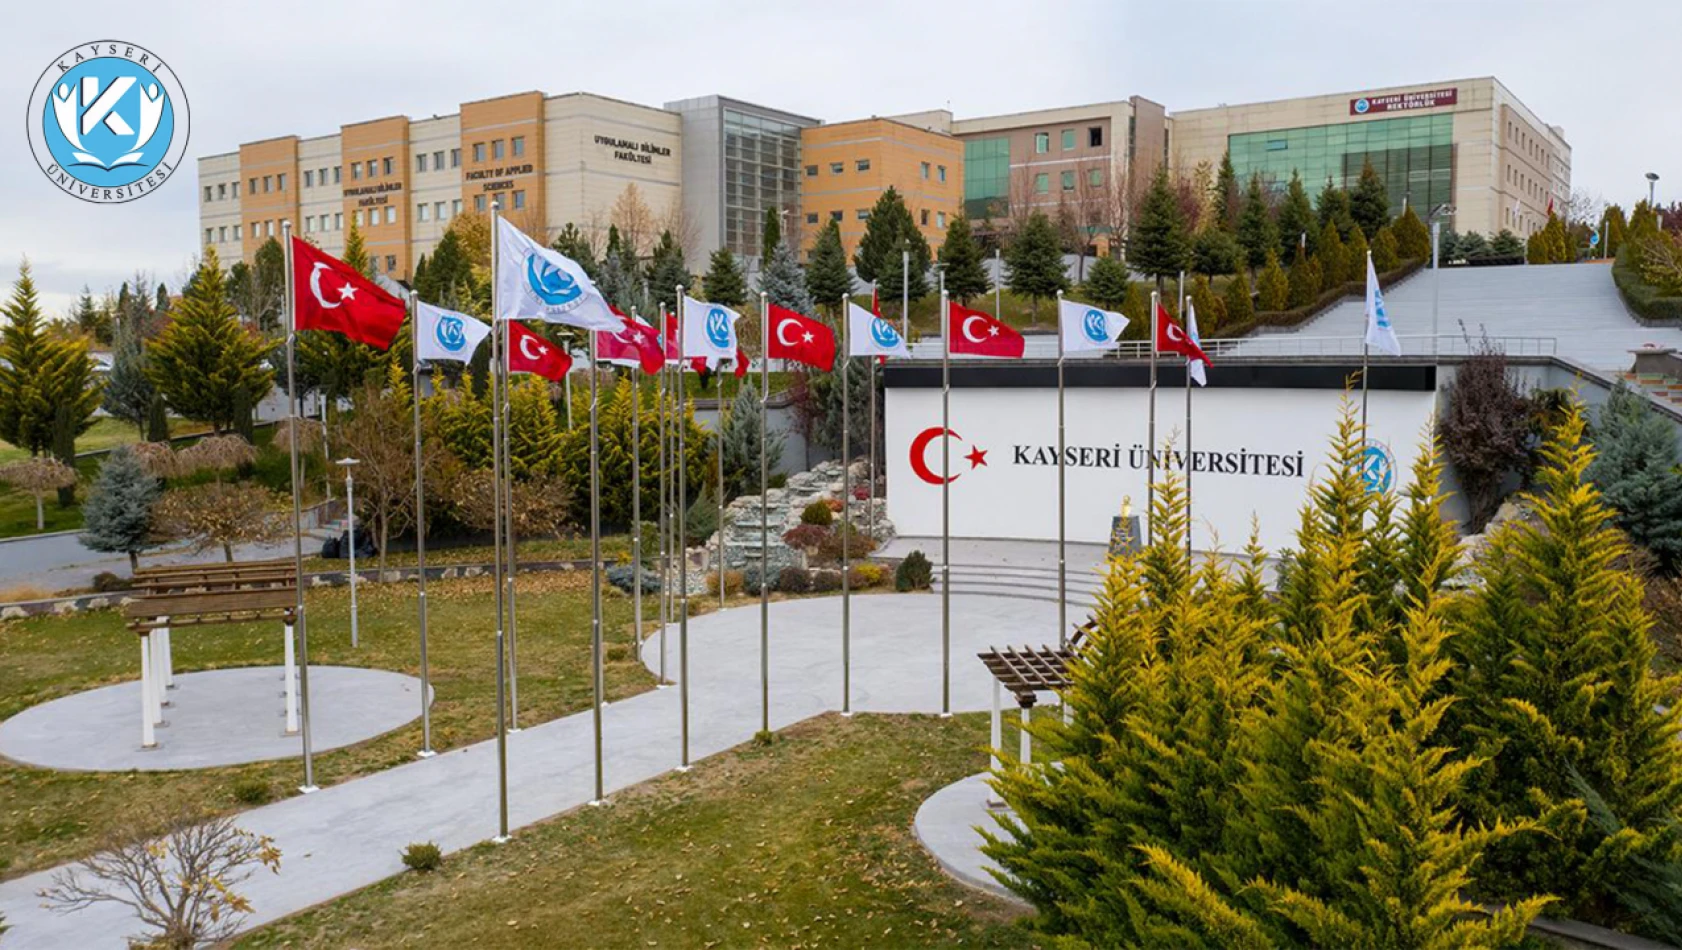 Dikkat: Kayseri'de yeni fakülteye öğretim elemanı alınacak!